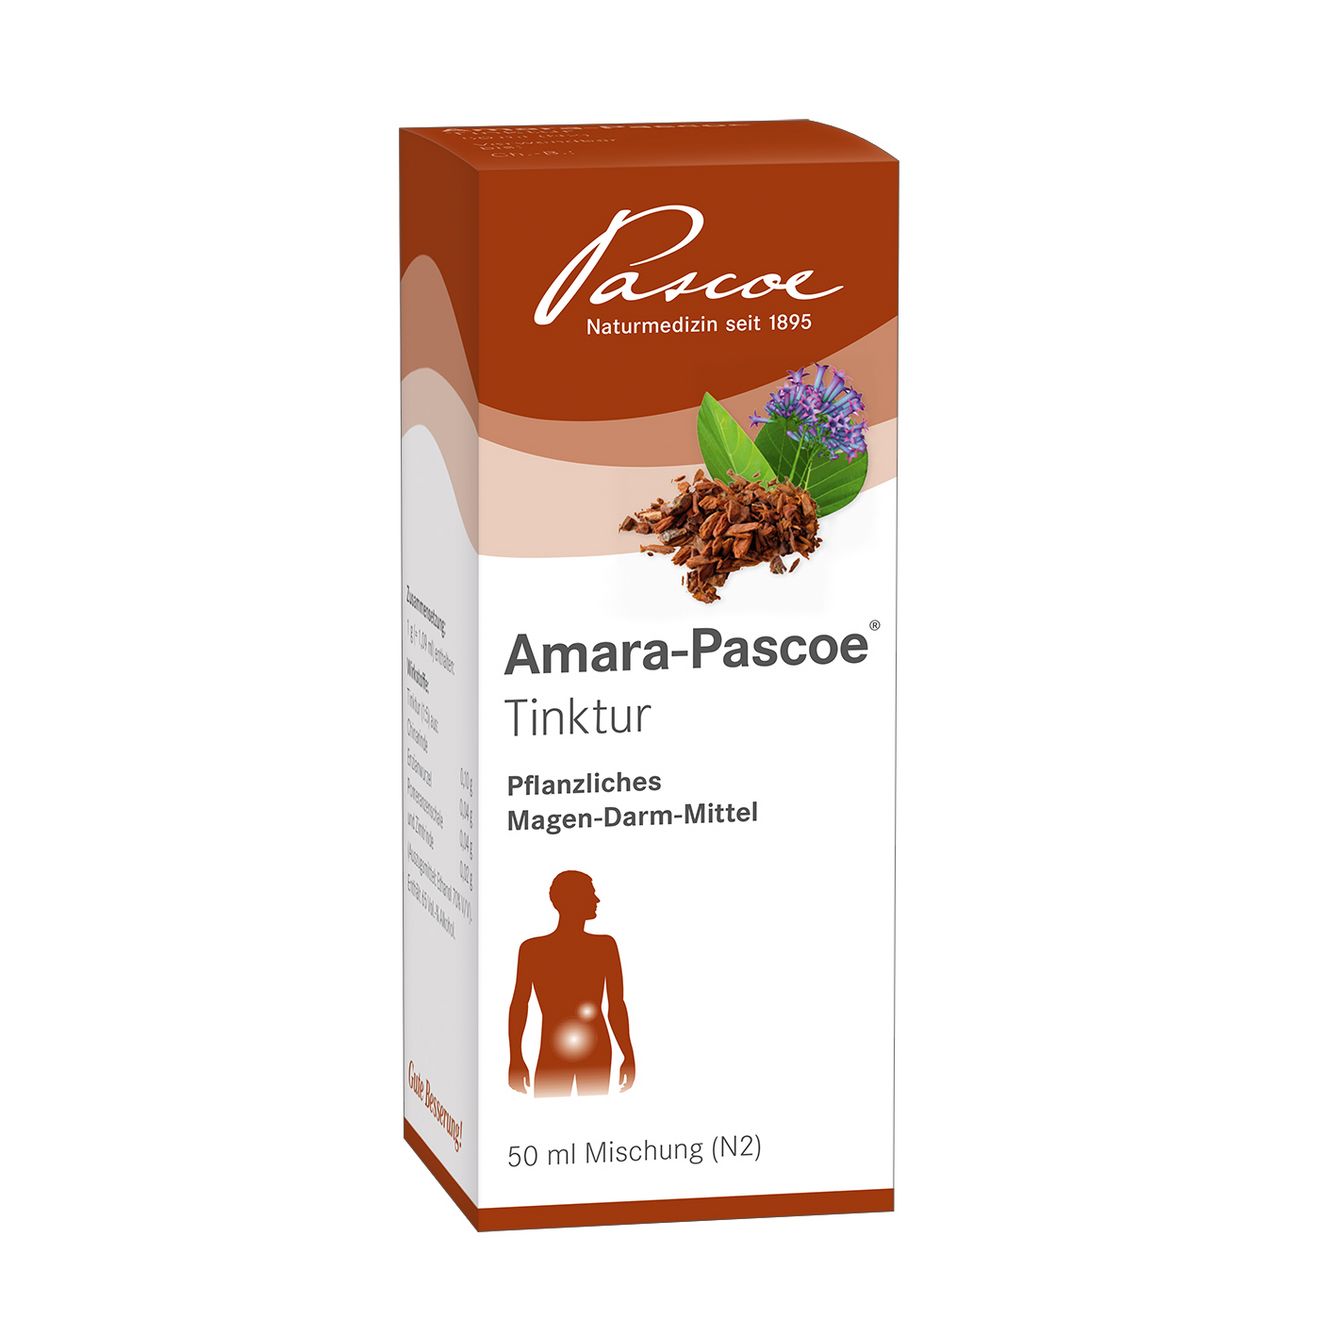 Amara-Pascoe 50 ml Packshot PZN 02219211